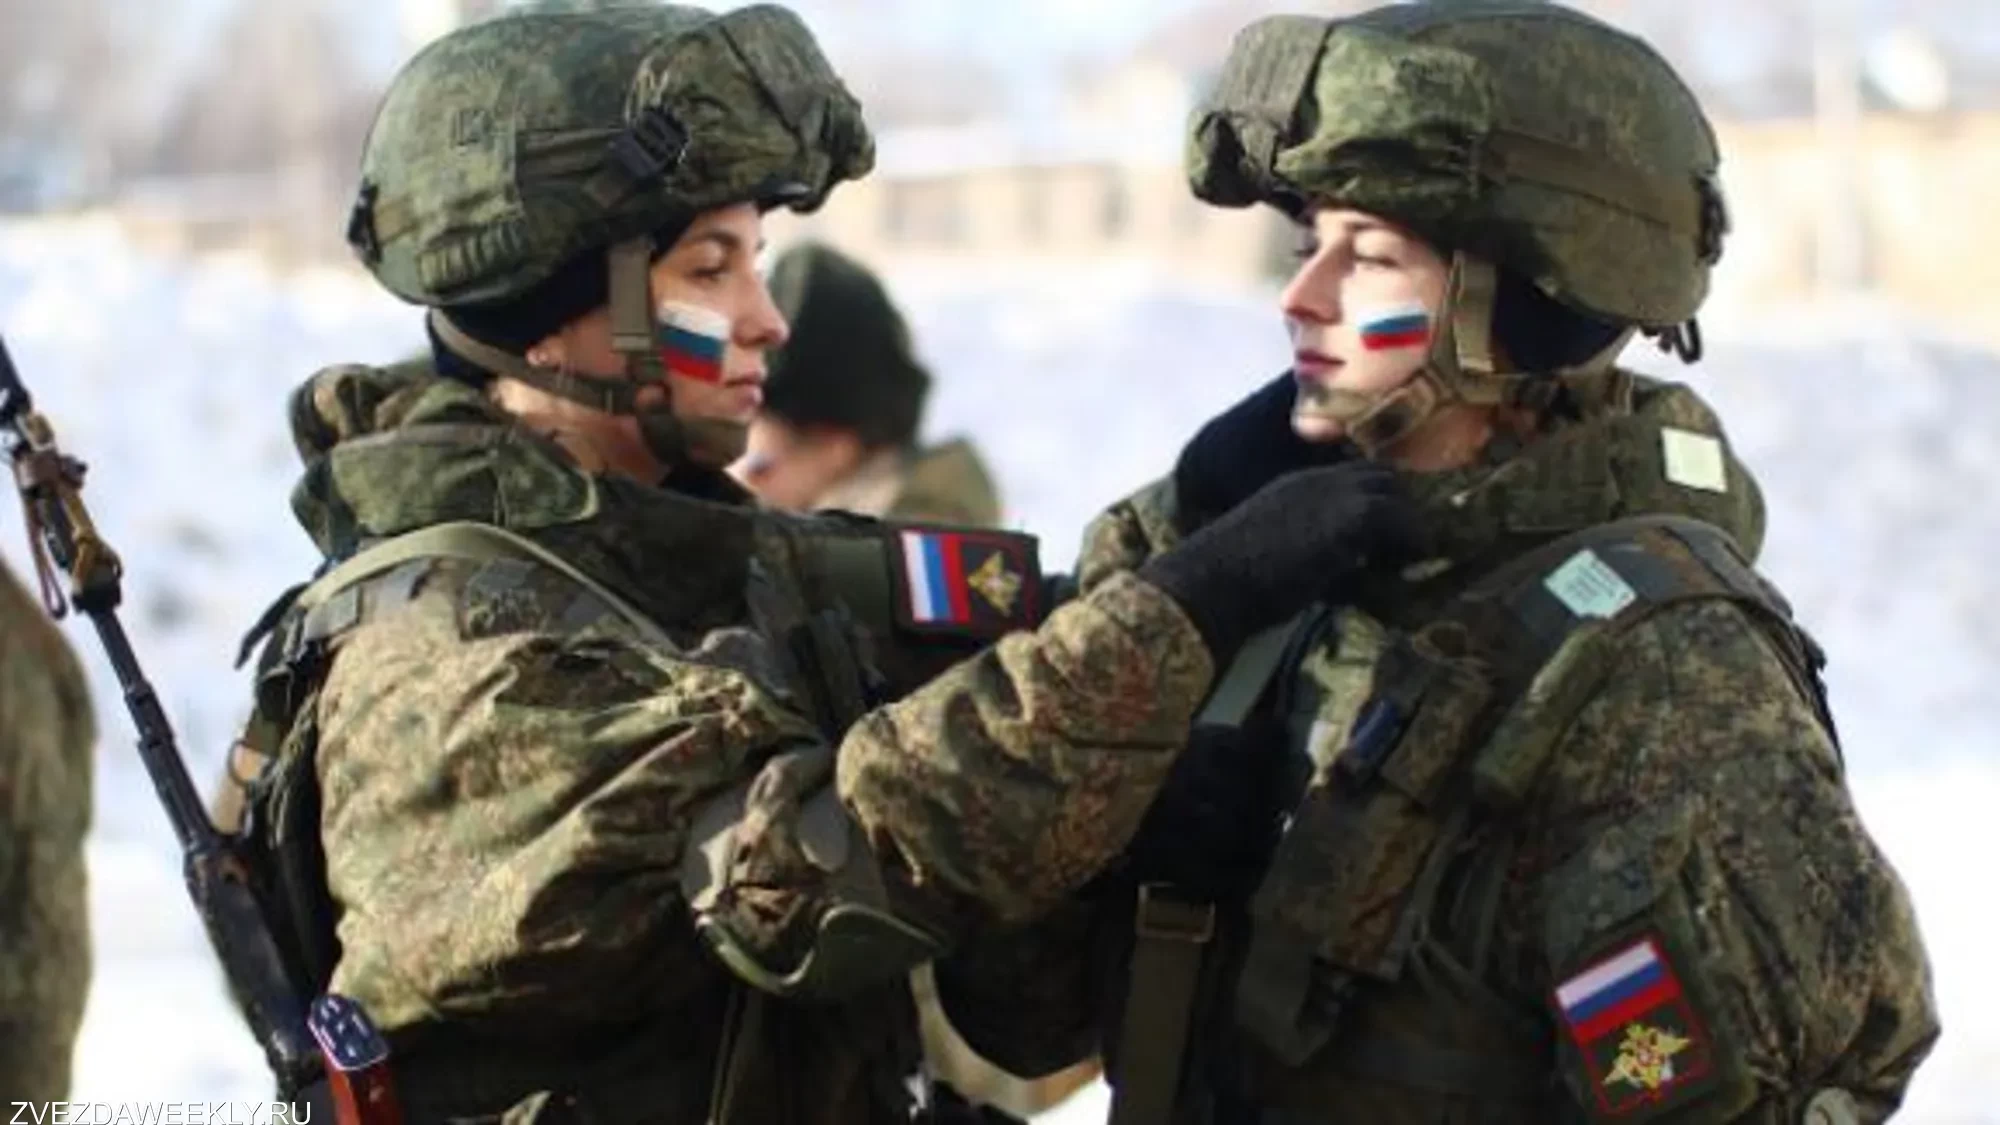 شاهد: مسابقة روسية لأجمل مقاتلة في الجيش